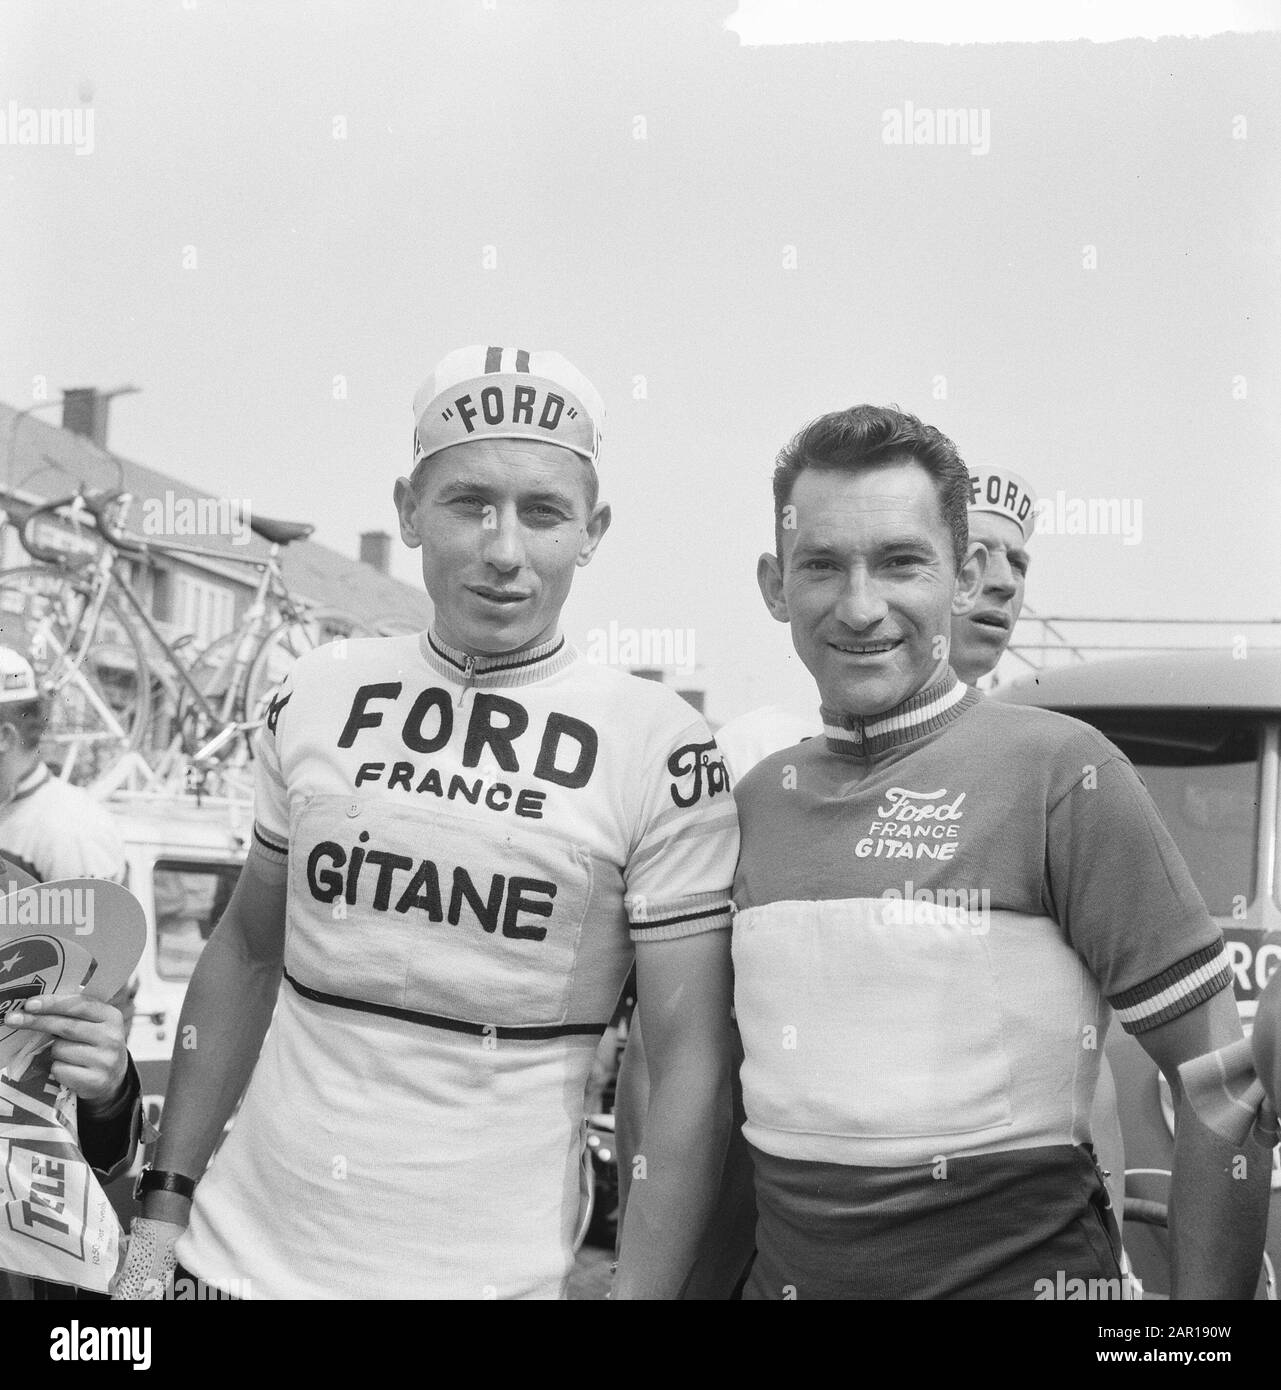 Tour des Pays-Bas, commencer à Amstelveen, Jacques Anquetil (à gauche) et Jean  Stablinski Date: 12 mai 1965 lieu: Amstelveen, Noord-Holland mots clés:  Sport, cyclisme Nom personnel: Anquetil Jacques, Stablinski Jean Nom de